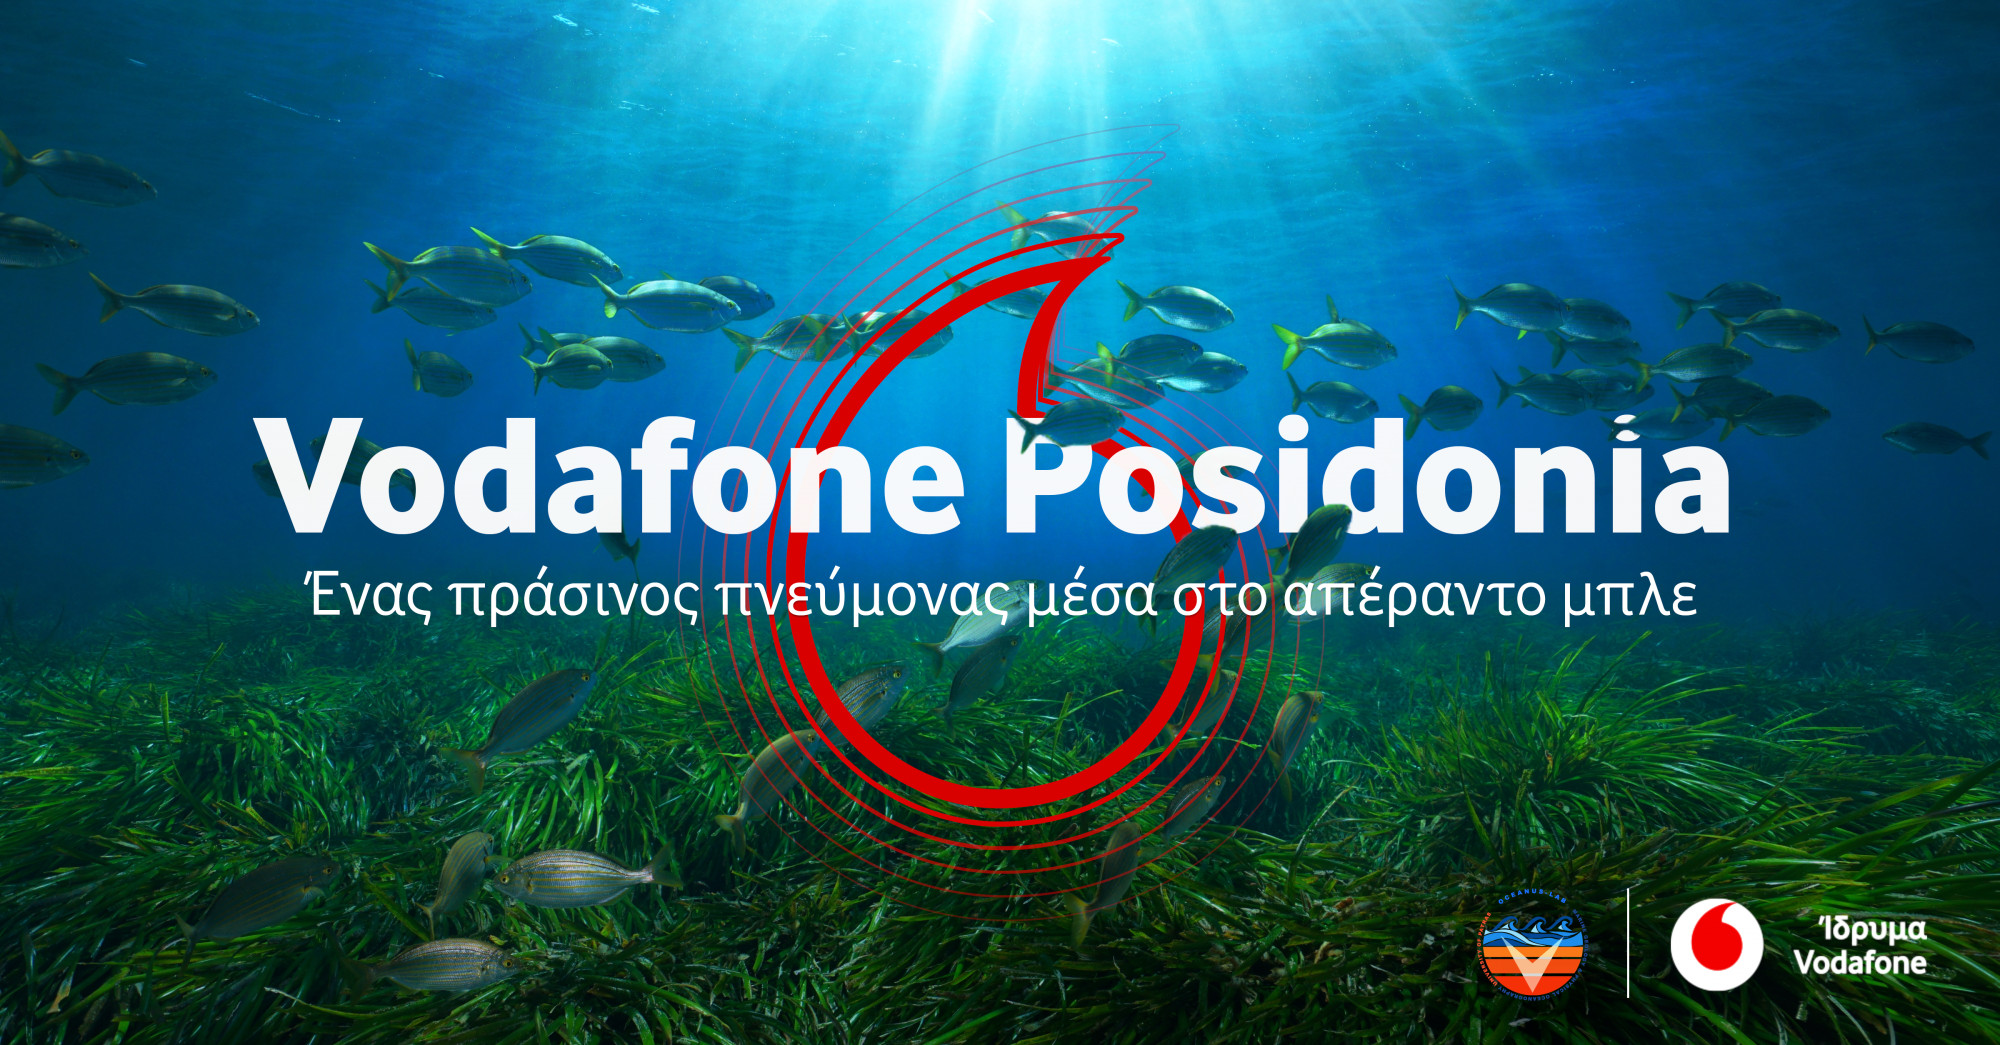 Τα λιβάδια της ελληνικής Ποσειδωνίας υπό την προστασία του Ιδρύματος Vodafone